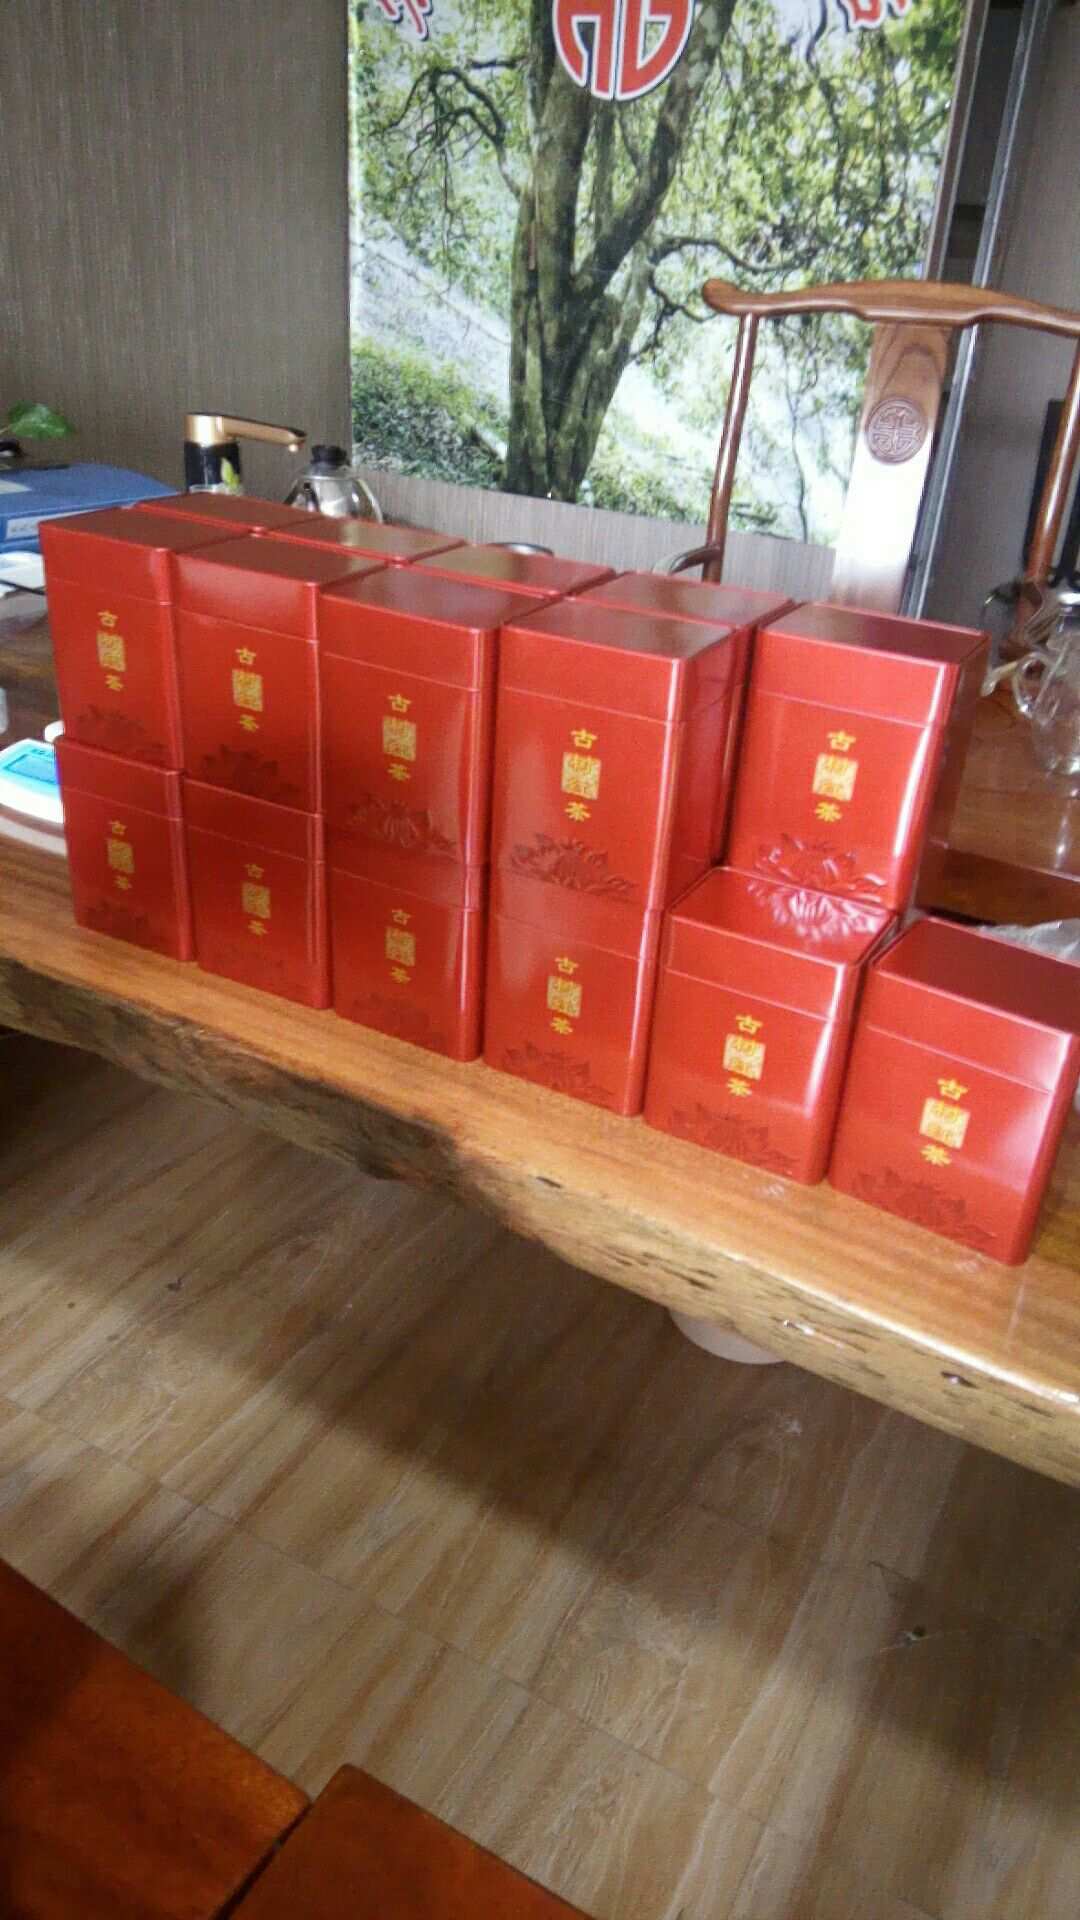 云南普洱茶铁盒装价格实，批发货源充足，阿里产地直销促销活动进行中